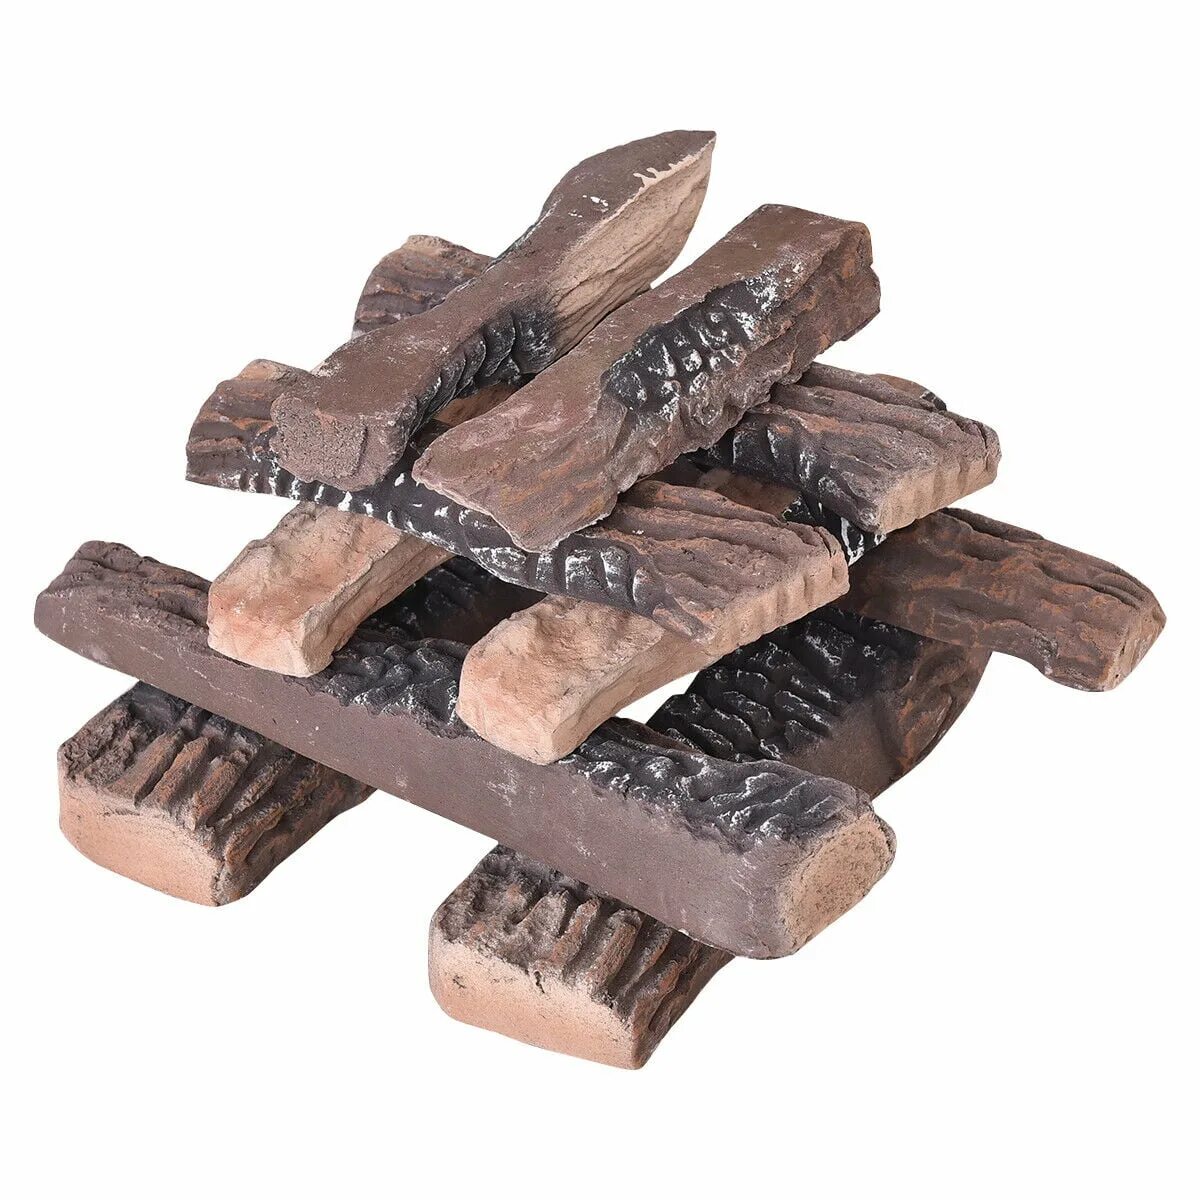 T me buy logs. Декоративные бревна для камина. Бревна для камина. Log Set.